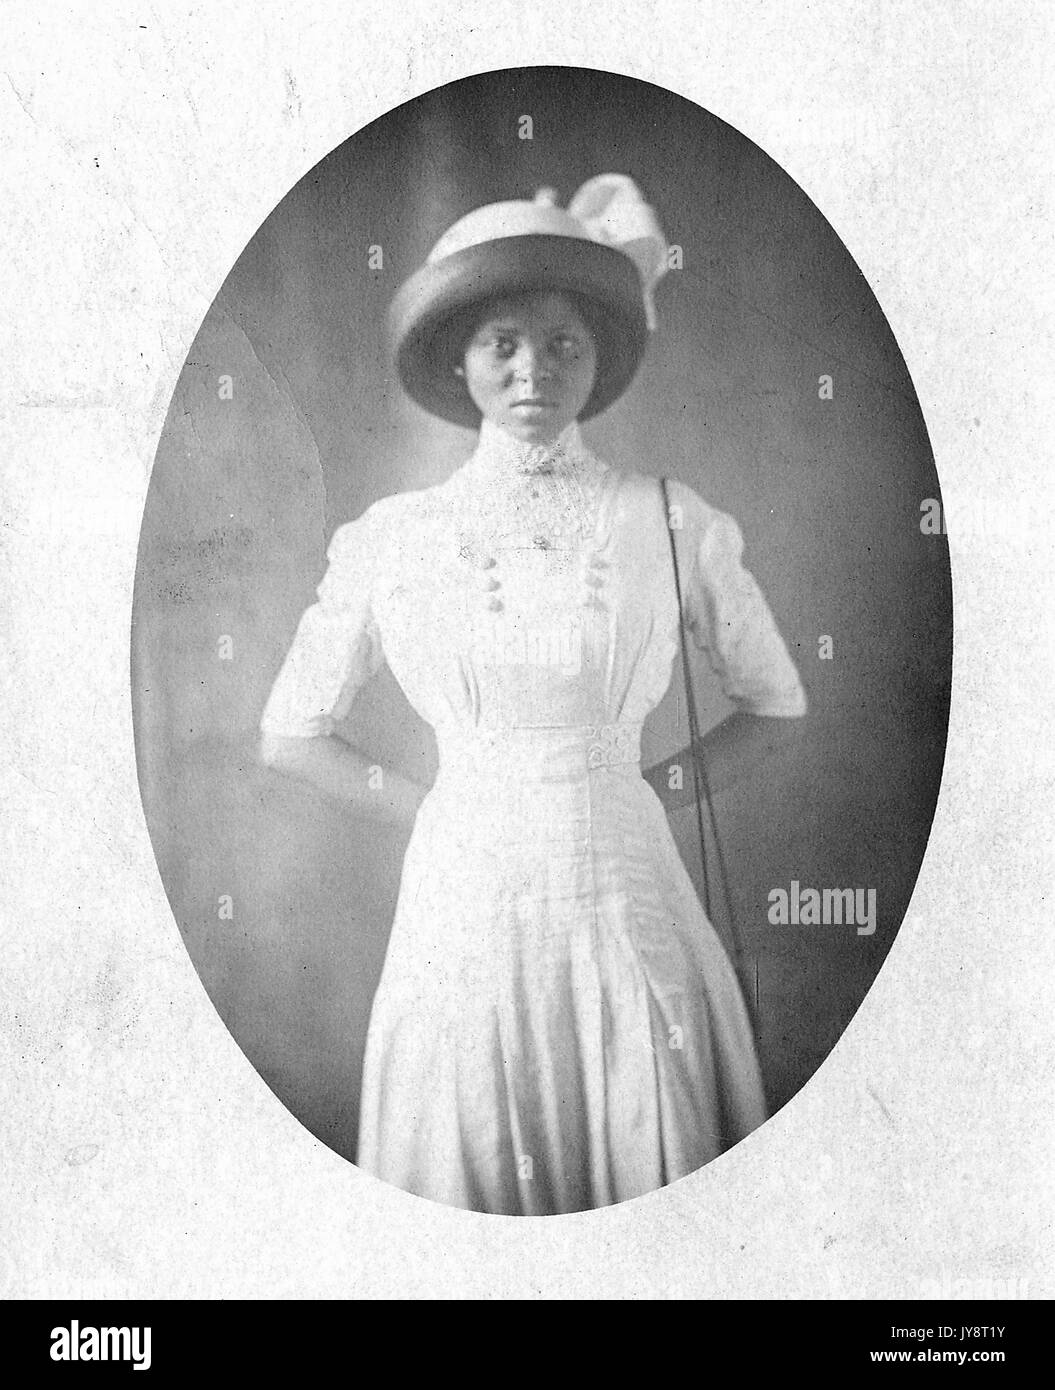 Drei viertel länge Porträt der jungen Afrikanische amerikanische Frau mit Hut und weißen Kleid, ihre Hände hinter dem Rücken verschränkt, mit einem ernsten Gesichtsausdruck, 1915. Stockfoto